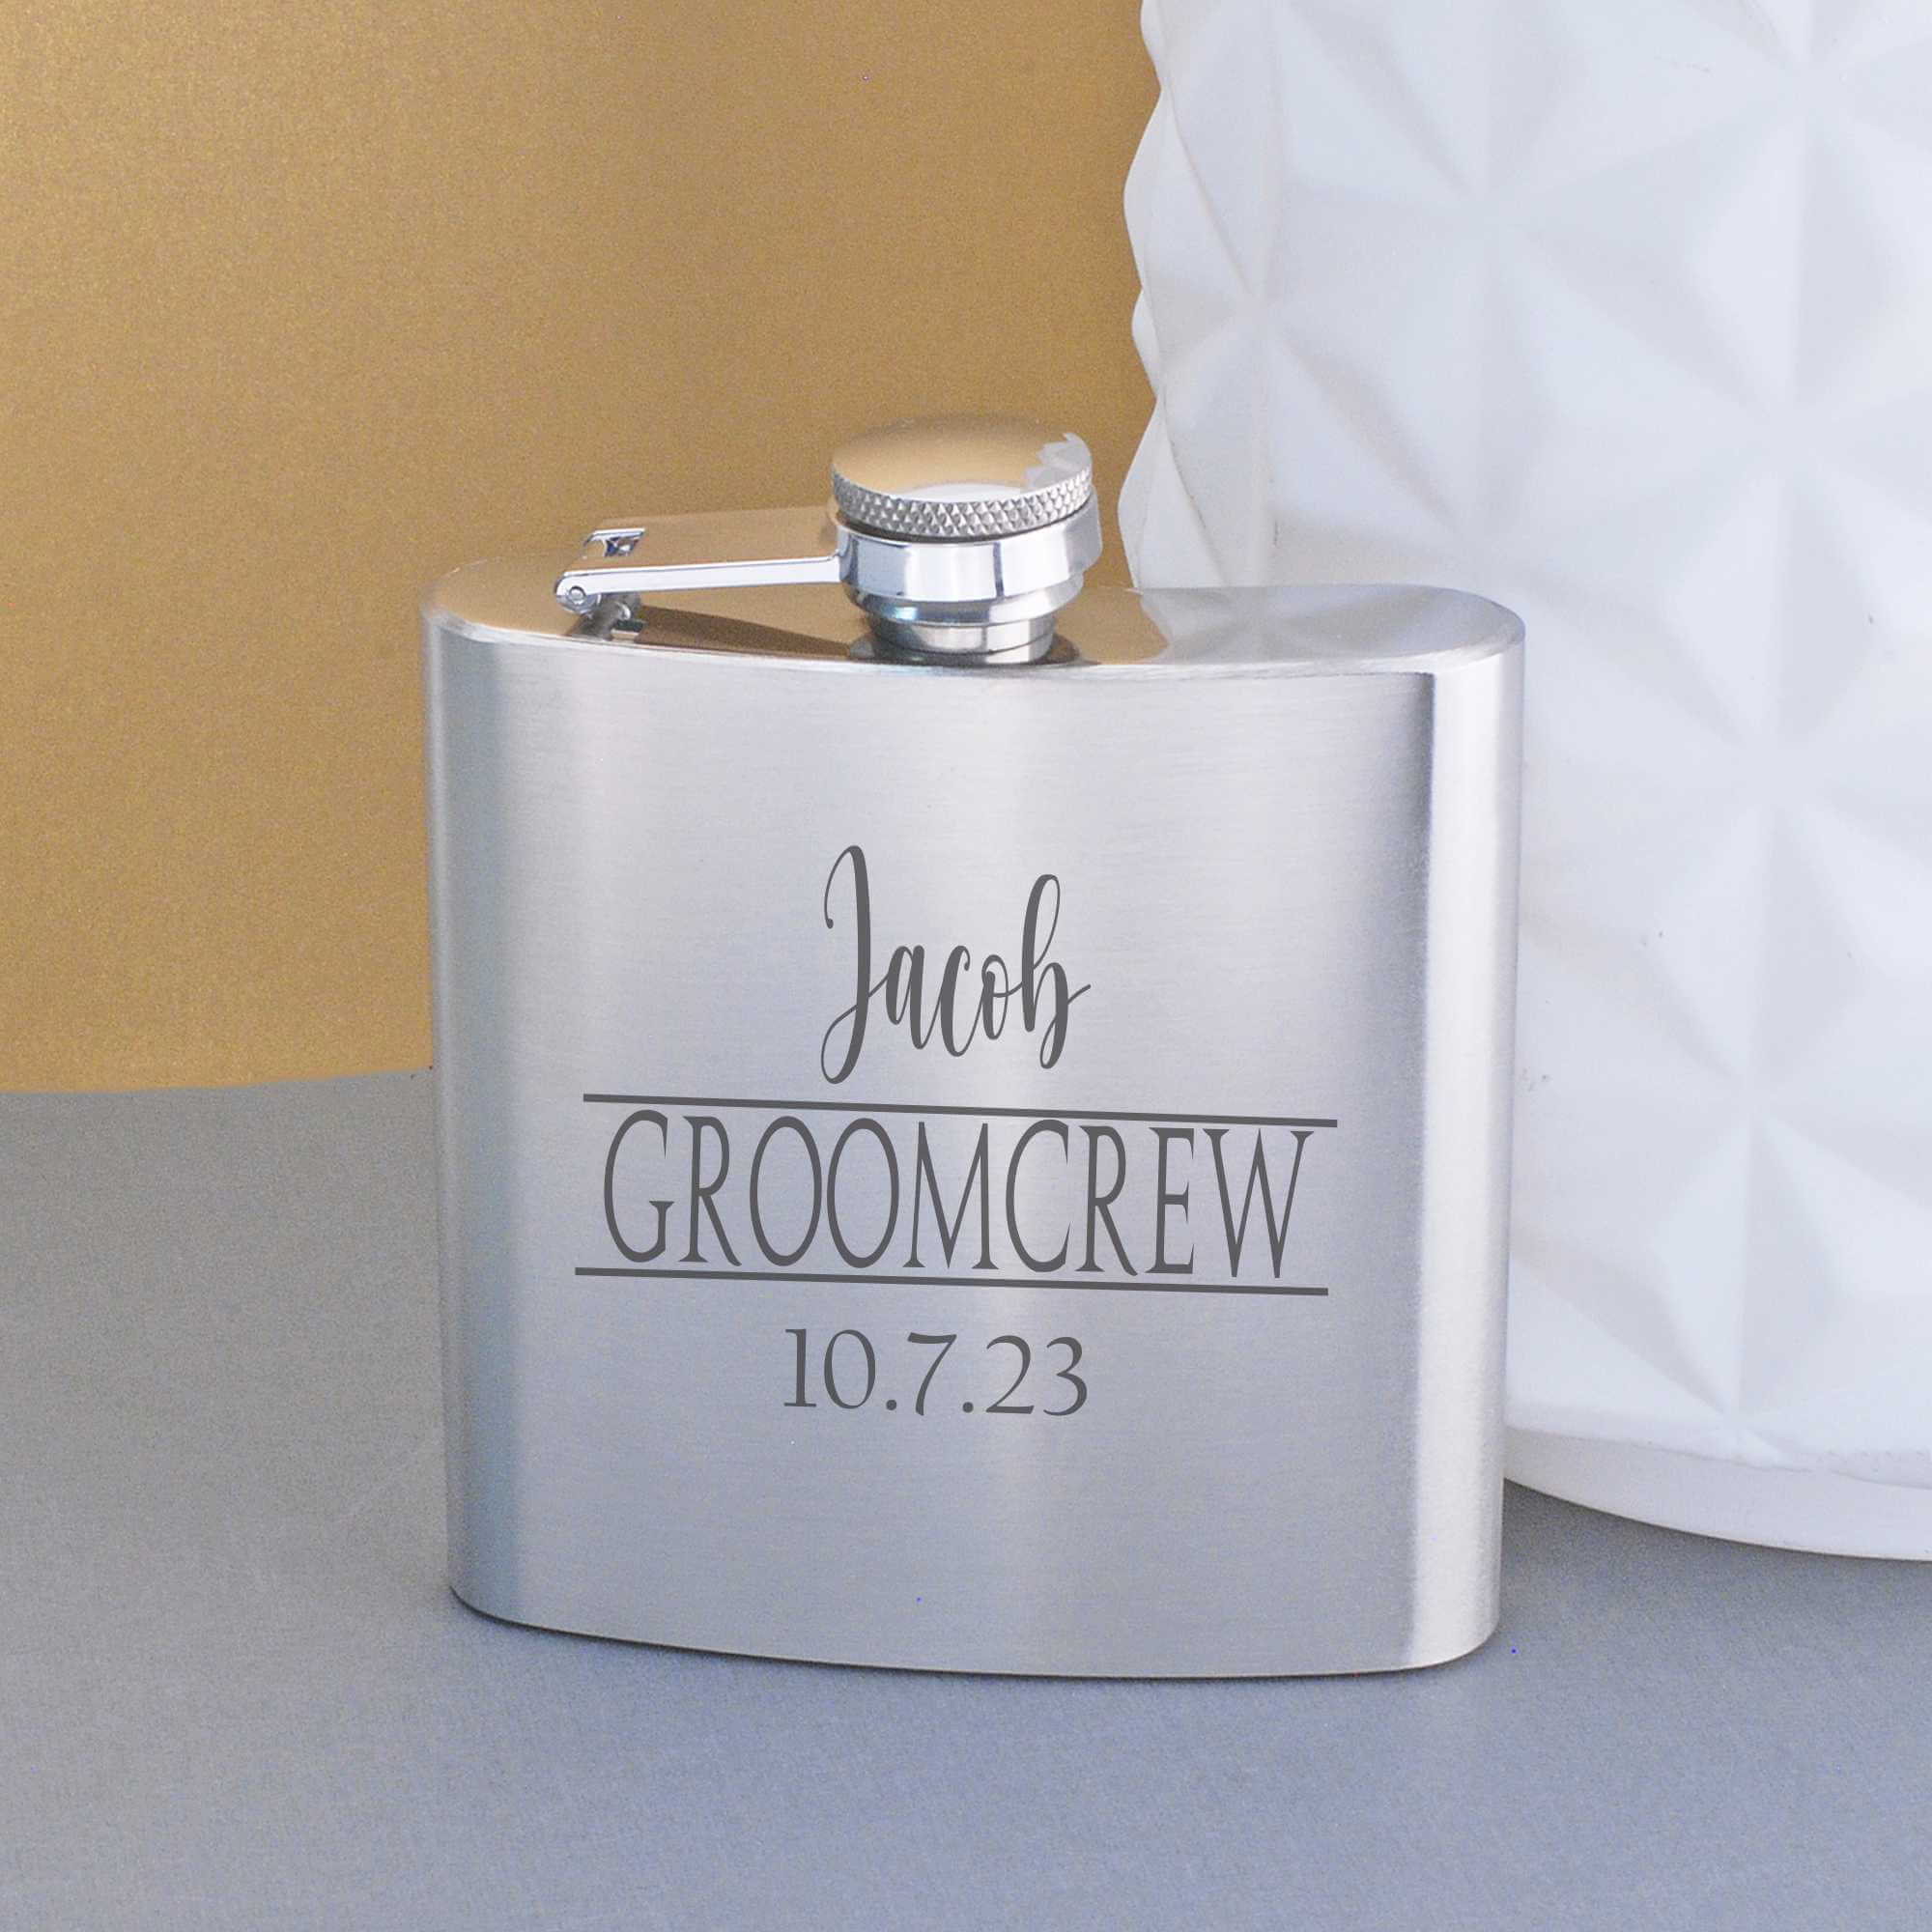 Groomcrew - Groomsman's Flask